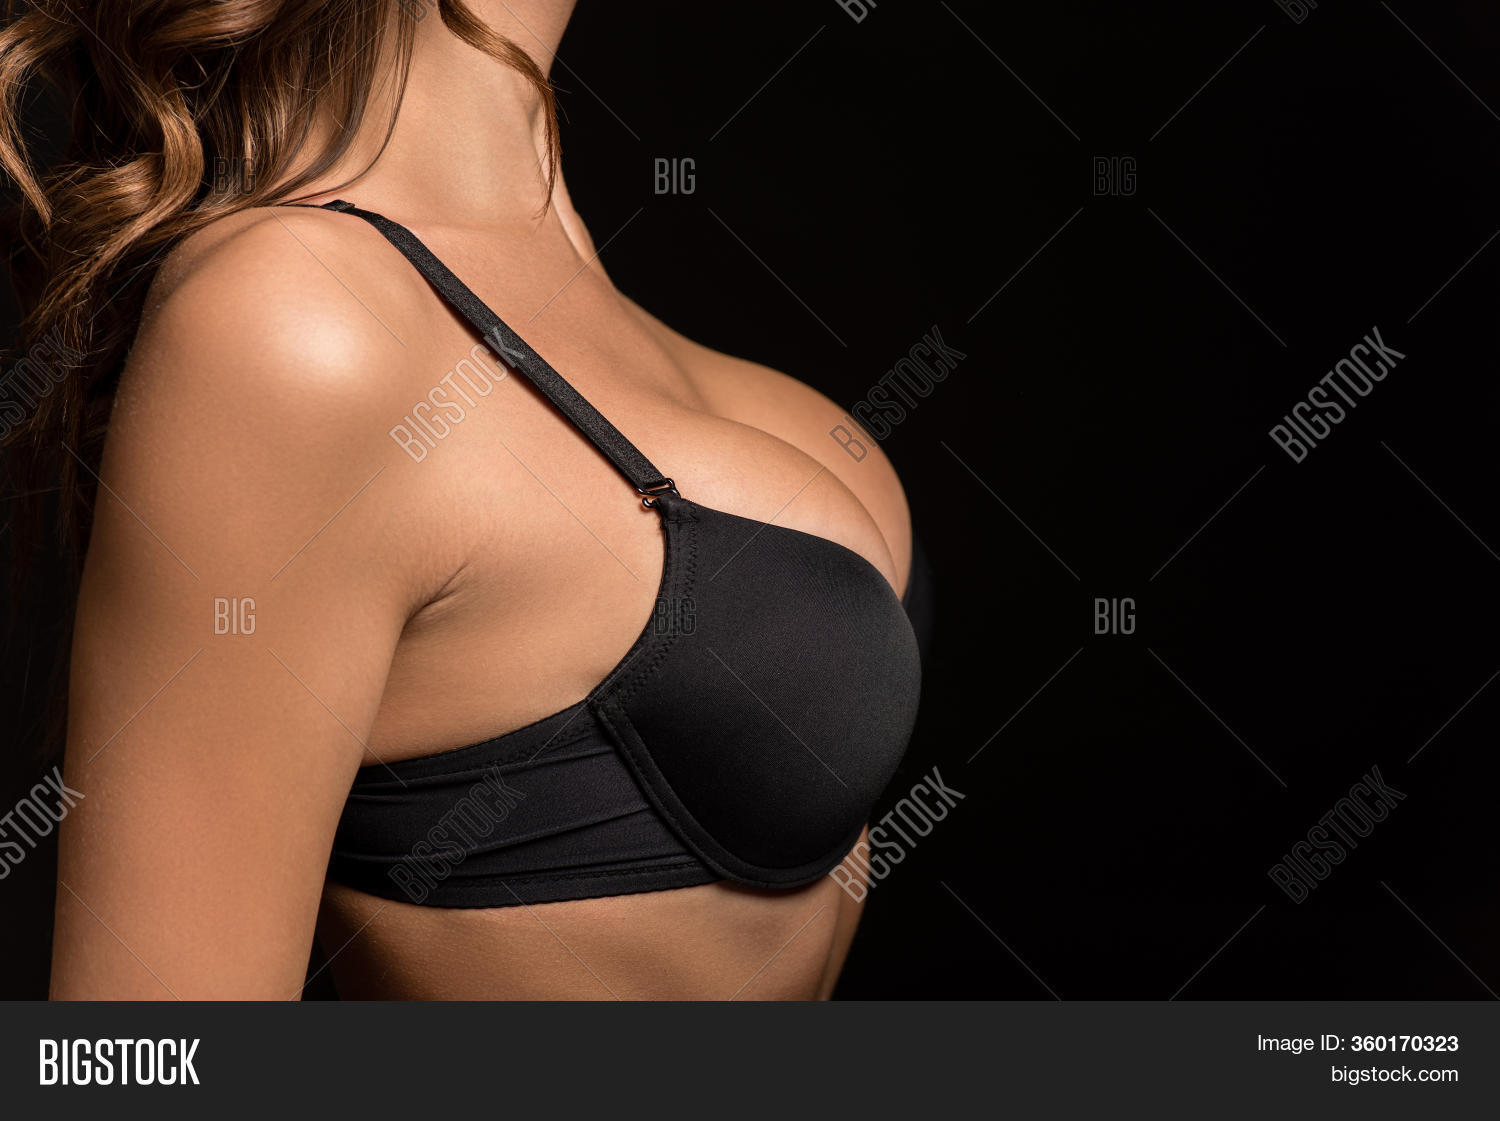 conrad sernia recommends big black sexy ladies pic